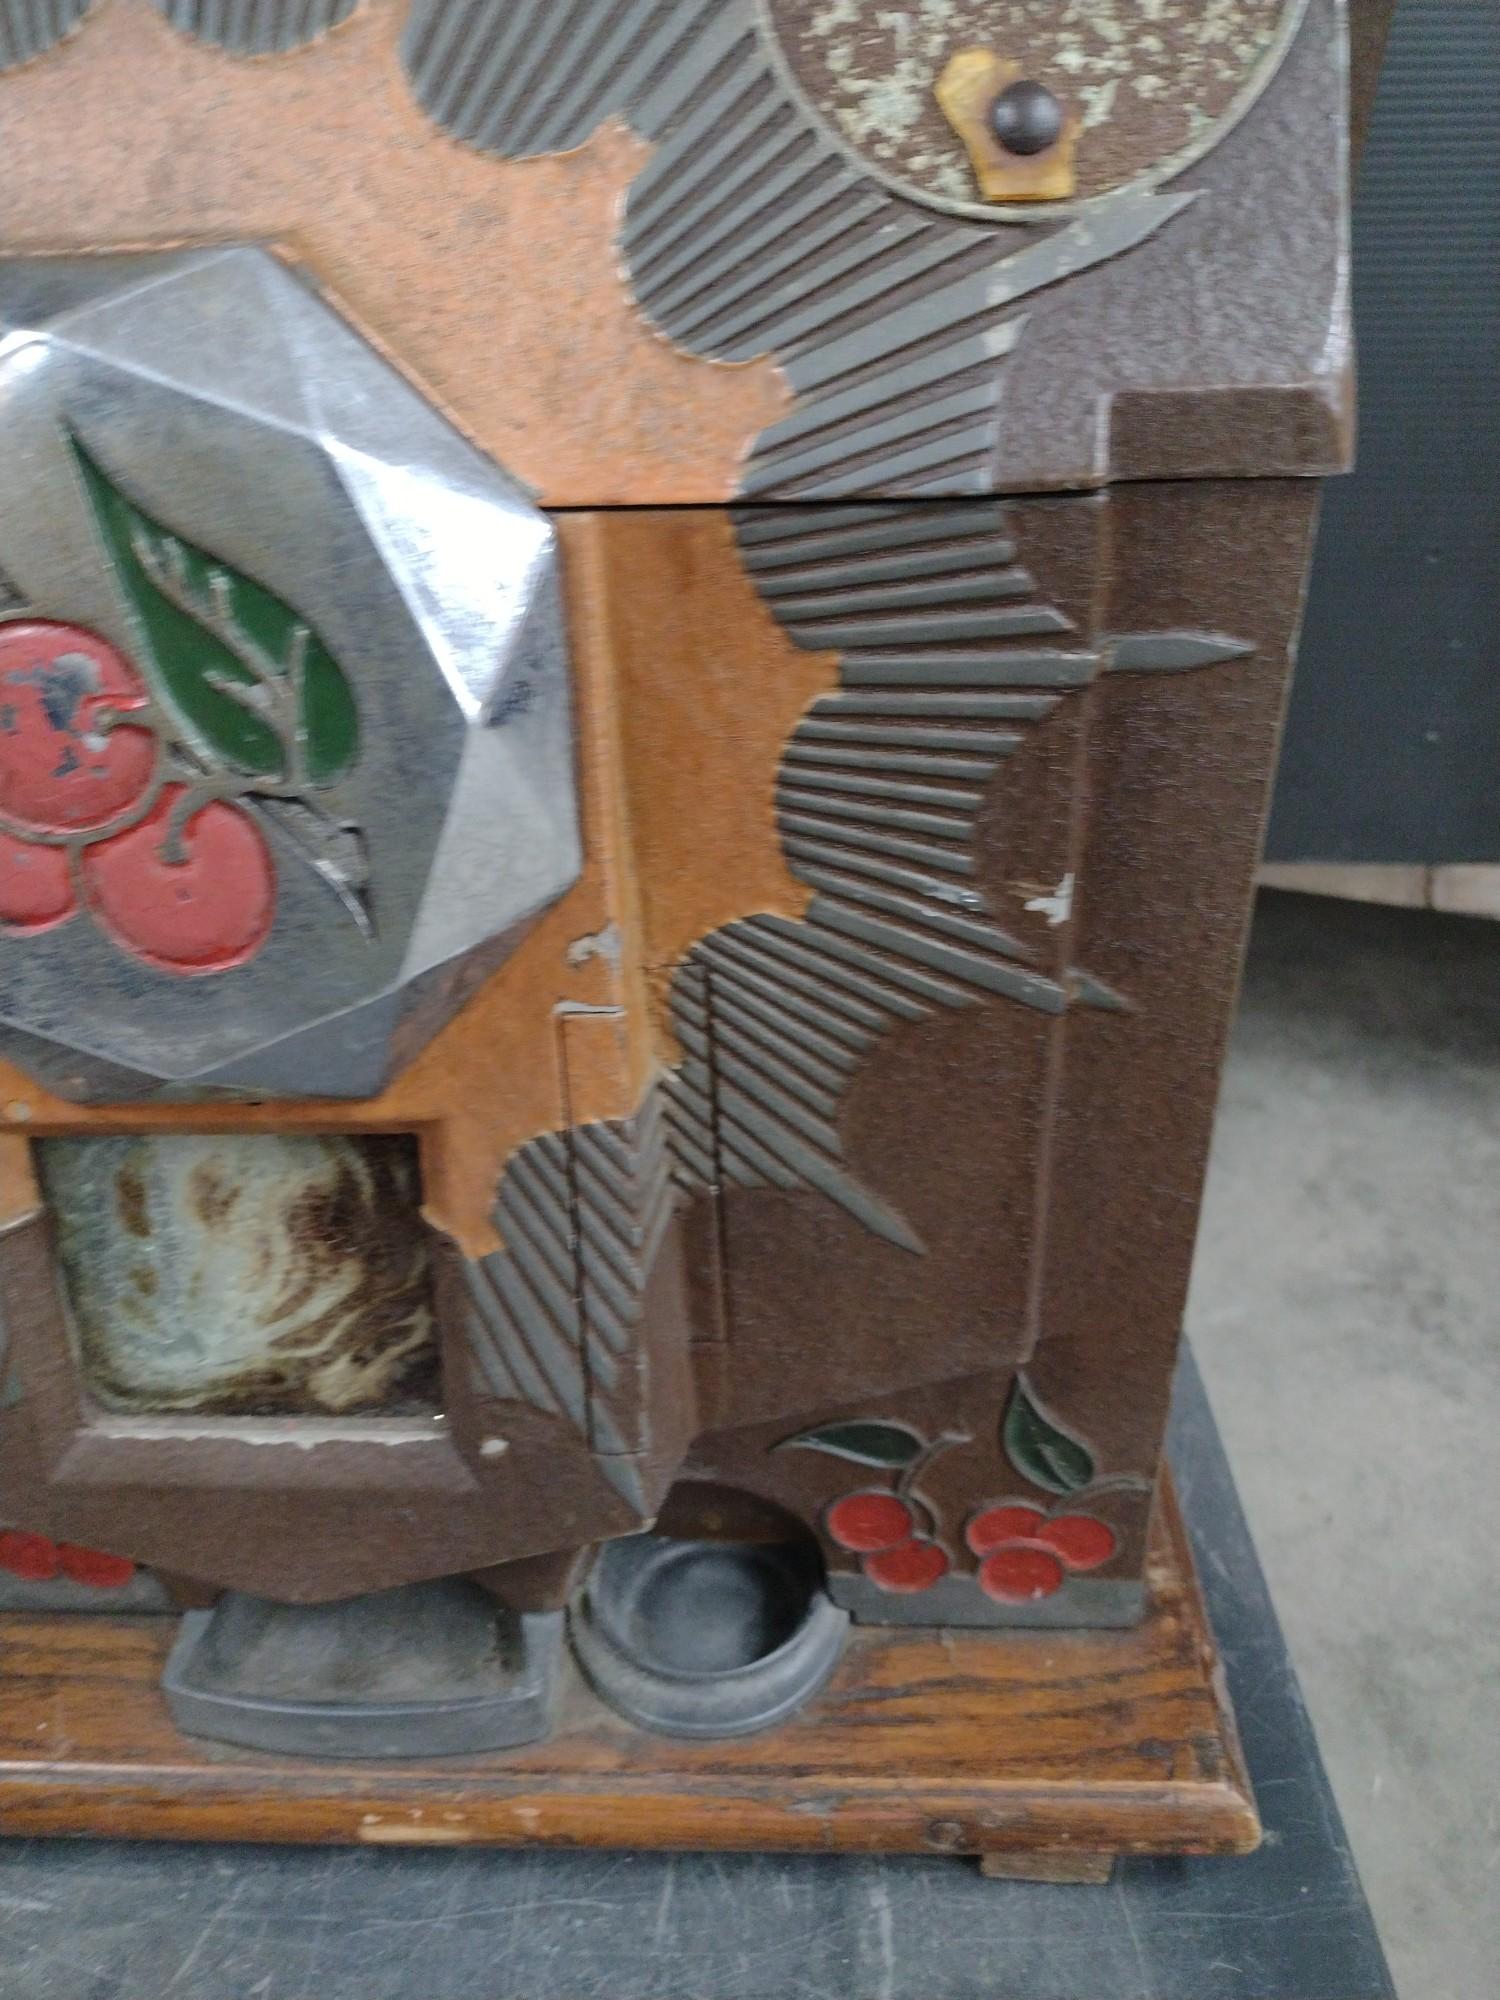 5 Cent Mills Bursting Cherry Slot Machine with Stand